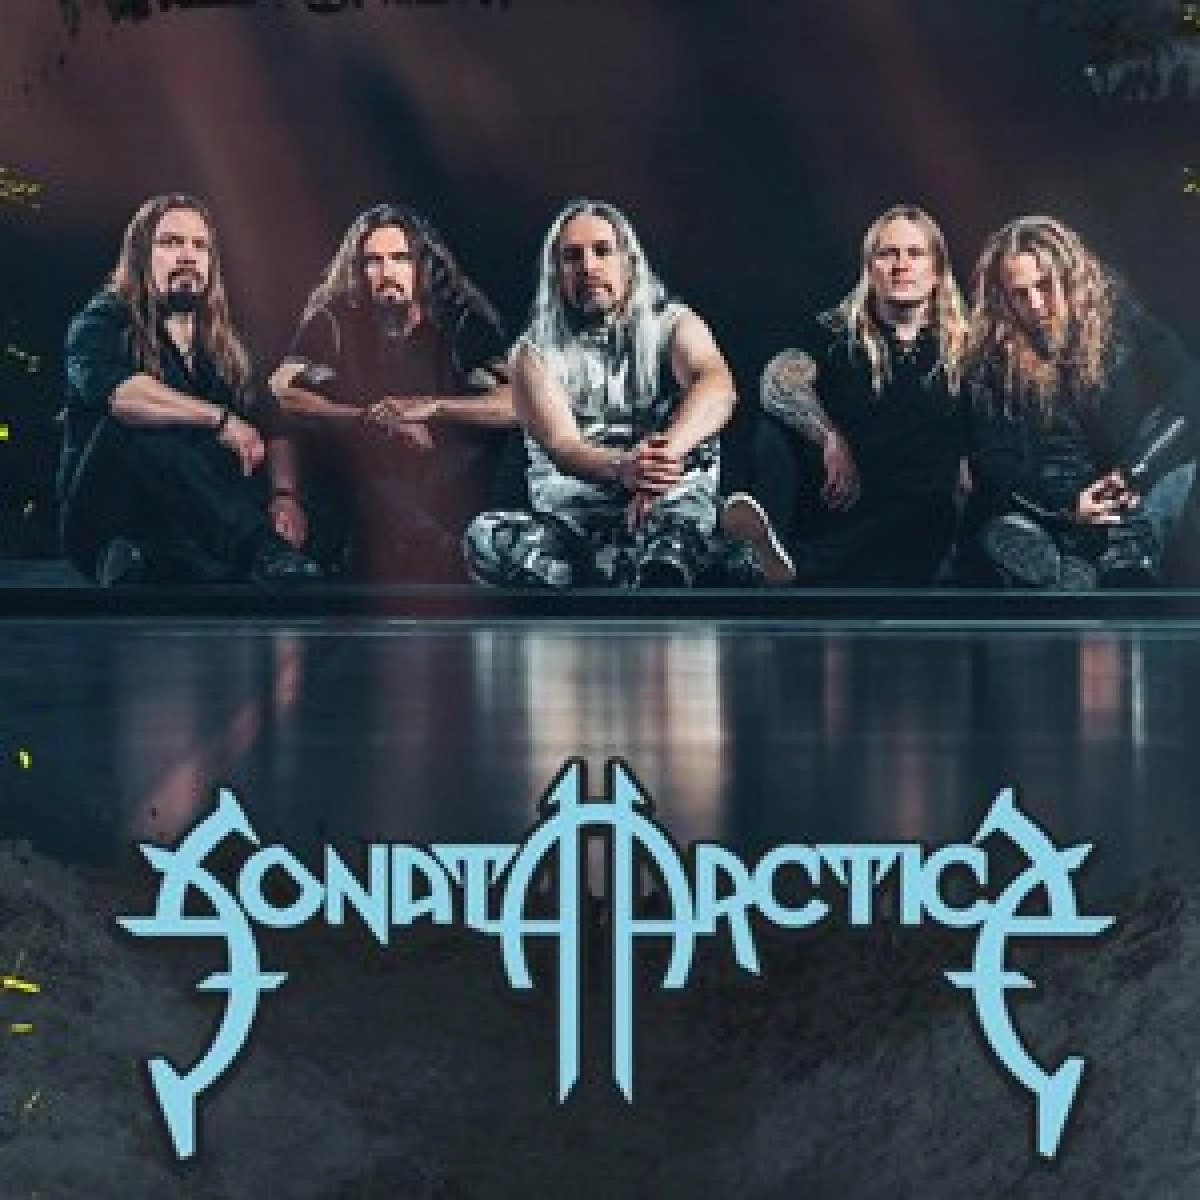 Sonata Arctica - Firewind - Serious Black at Backstage Werk Tickets